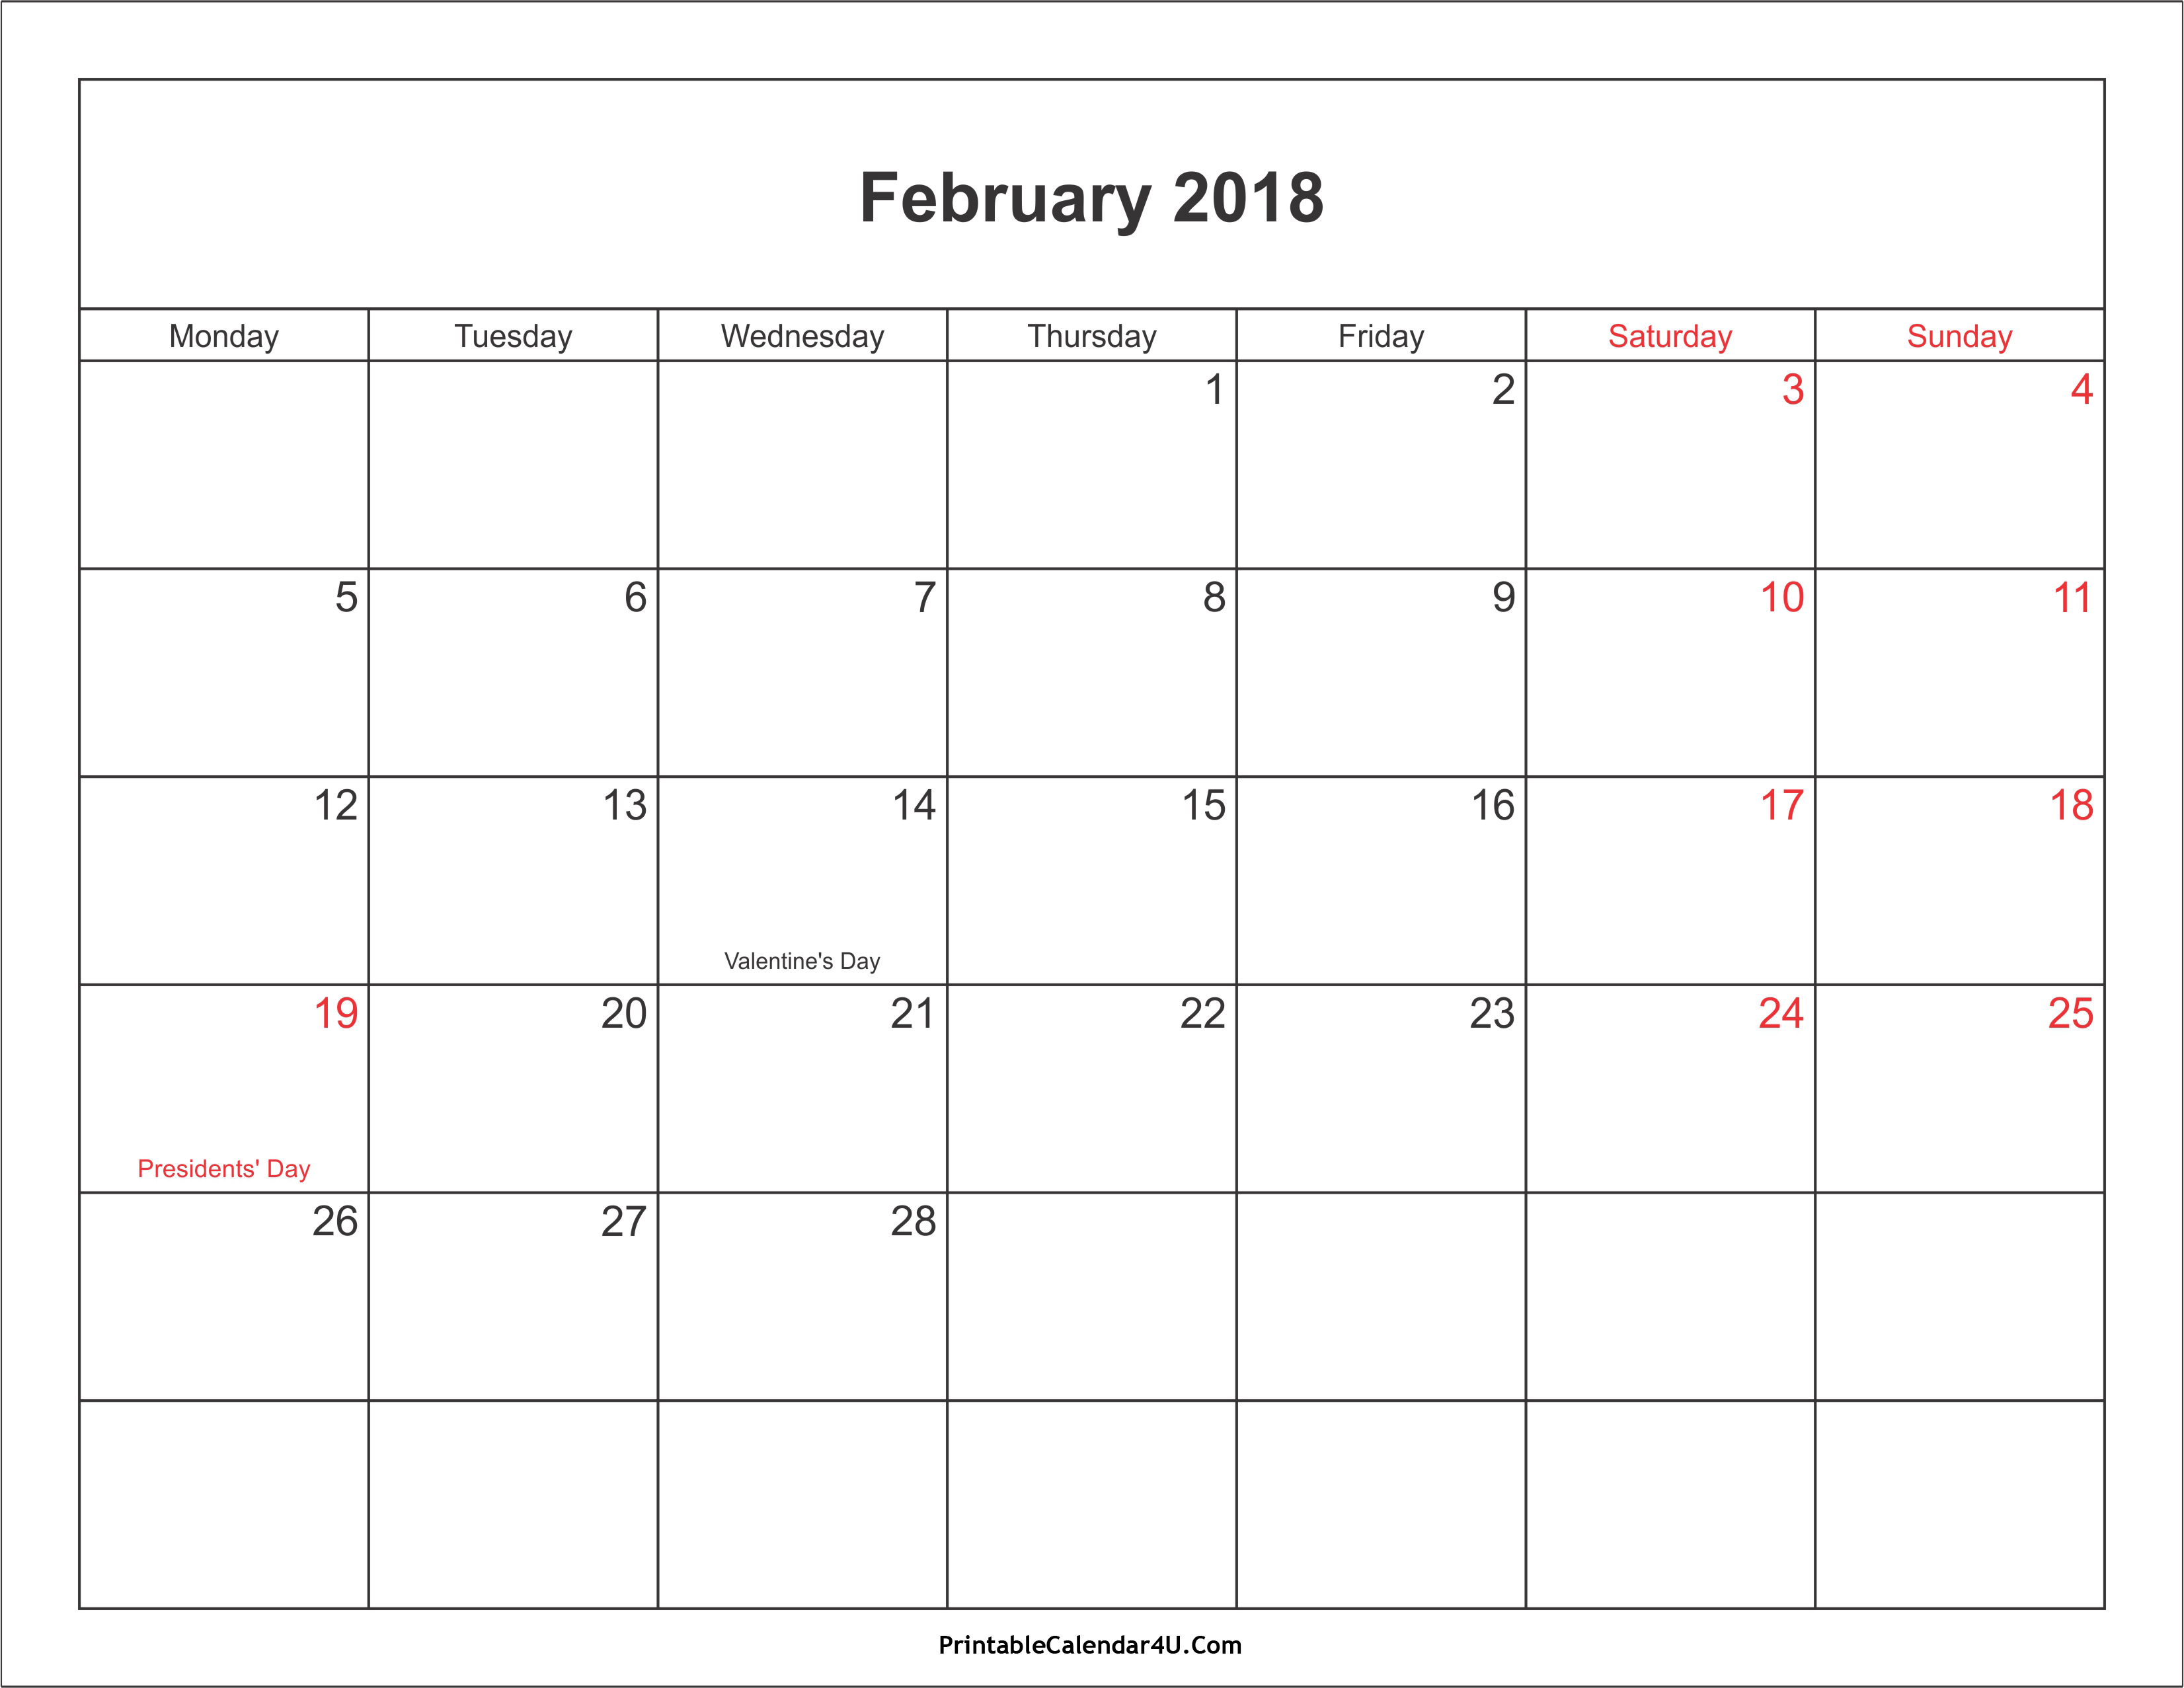 Printable February 2018 calendar with holidays list